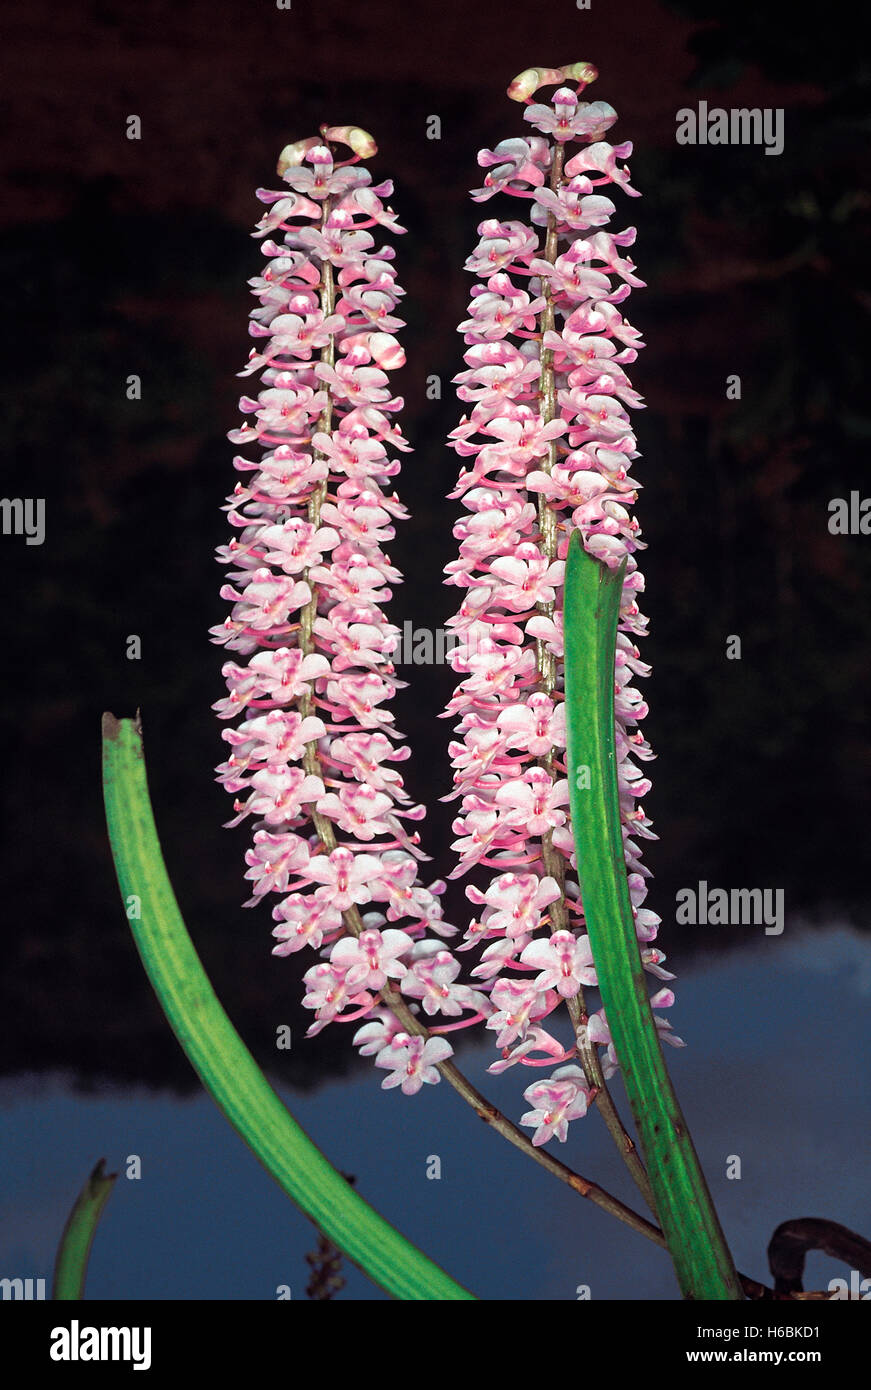 Ein Bekannter baumbewohnenden Orchideen allgemein bekannt als die foxtail Orchidee. rhynchostylis retusa. Familie: Orchidaceae Stockfoto